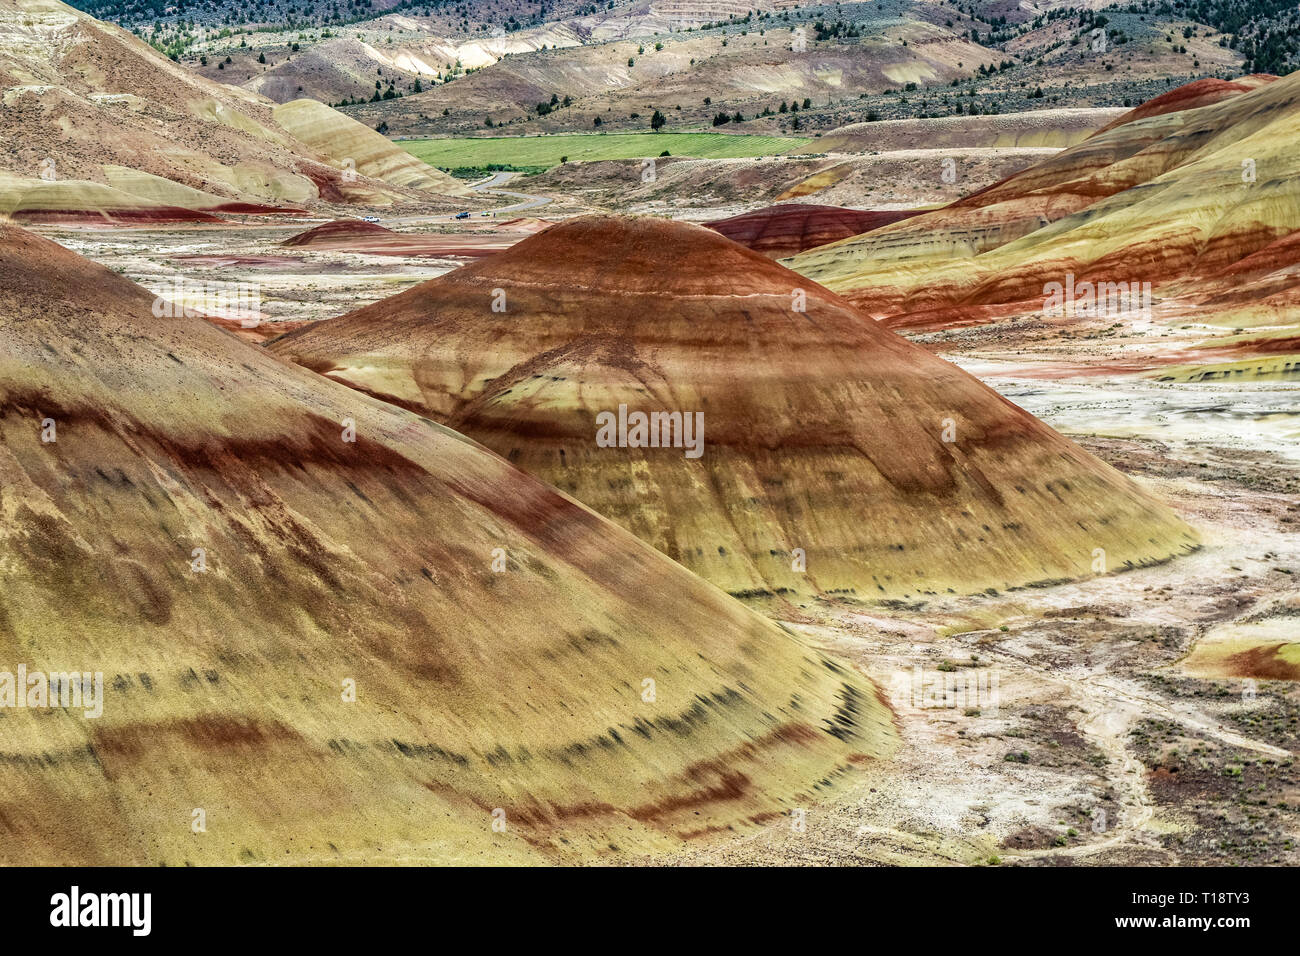 Formación de roca sedimentaria erosionados con coloridos estratos geológicos. El paisaje. Badlands paisaje de cerros pintados, Mitchell, Central de Oregón, Estados Unidos. Foto de stock